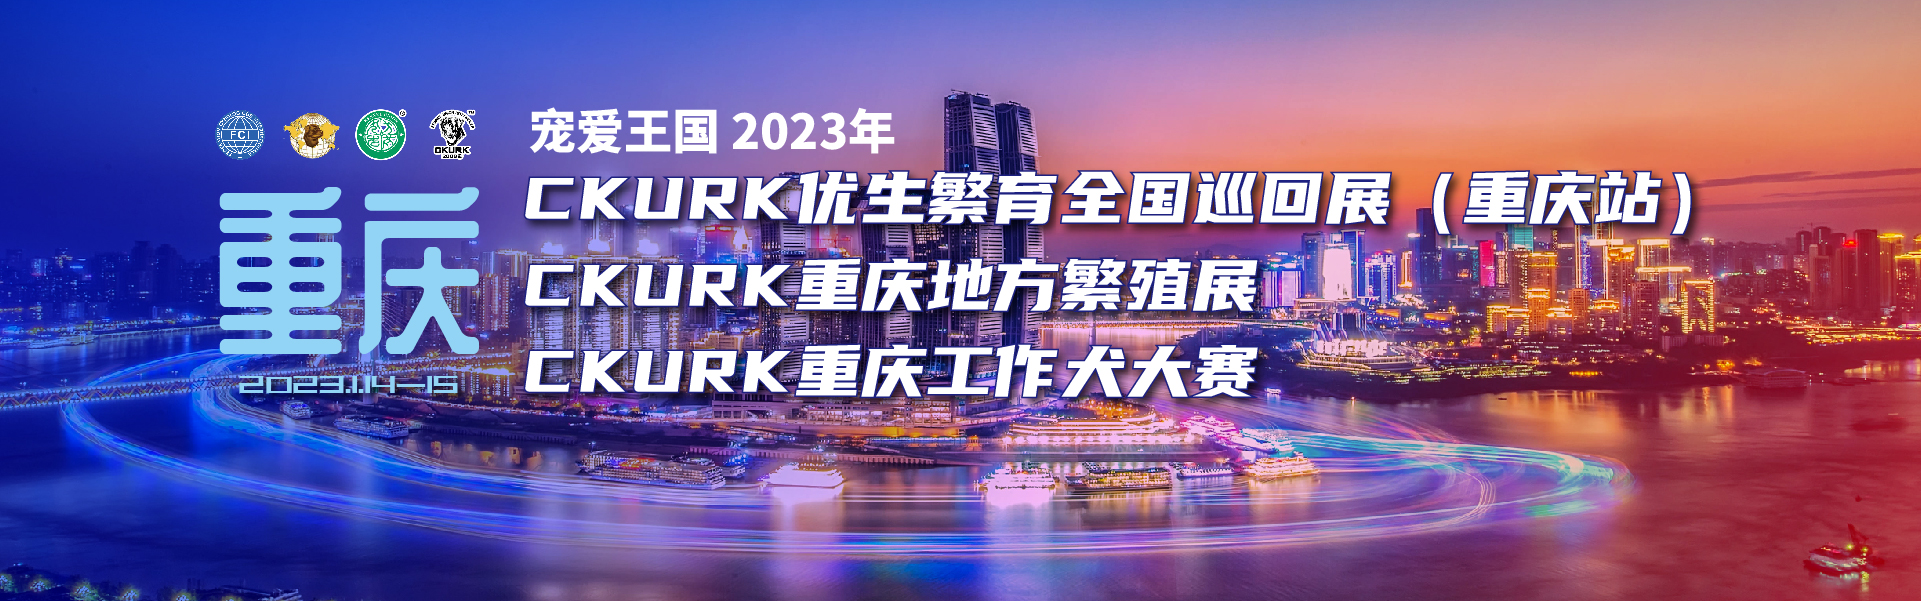 202303重庆地方展全国巡回展